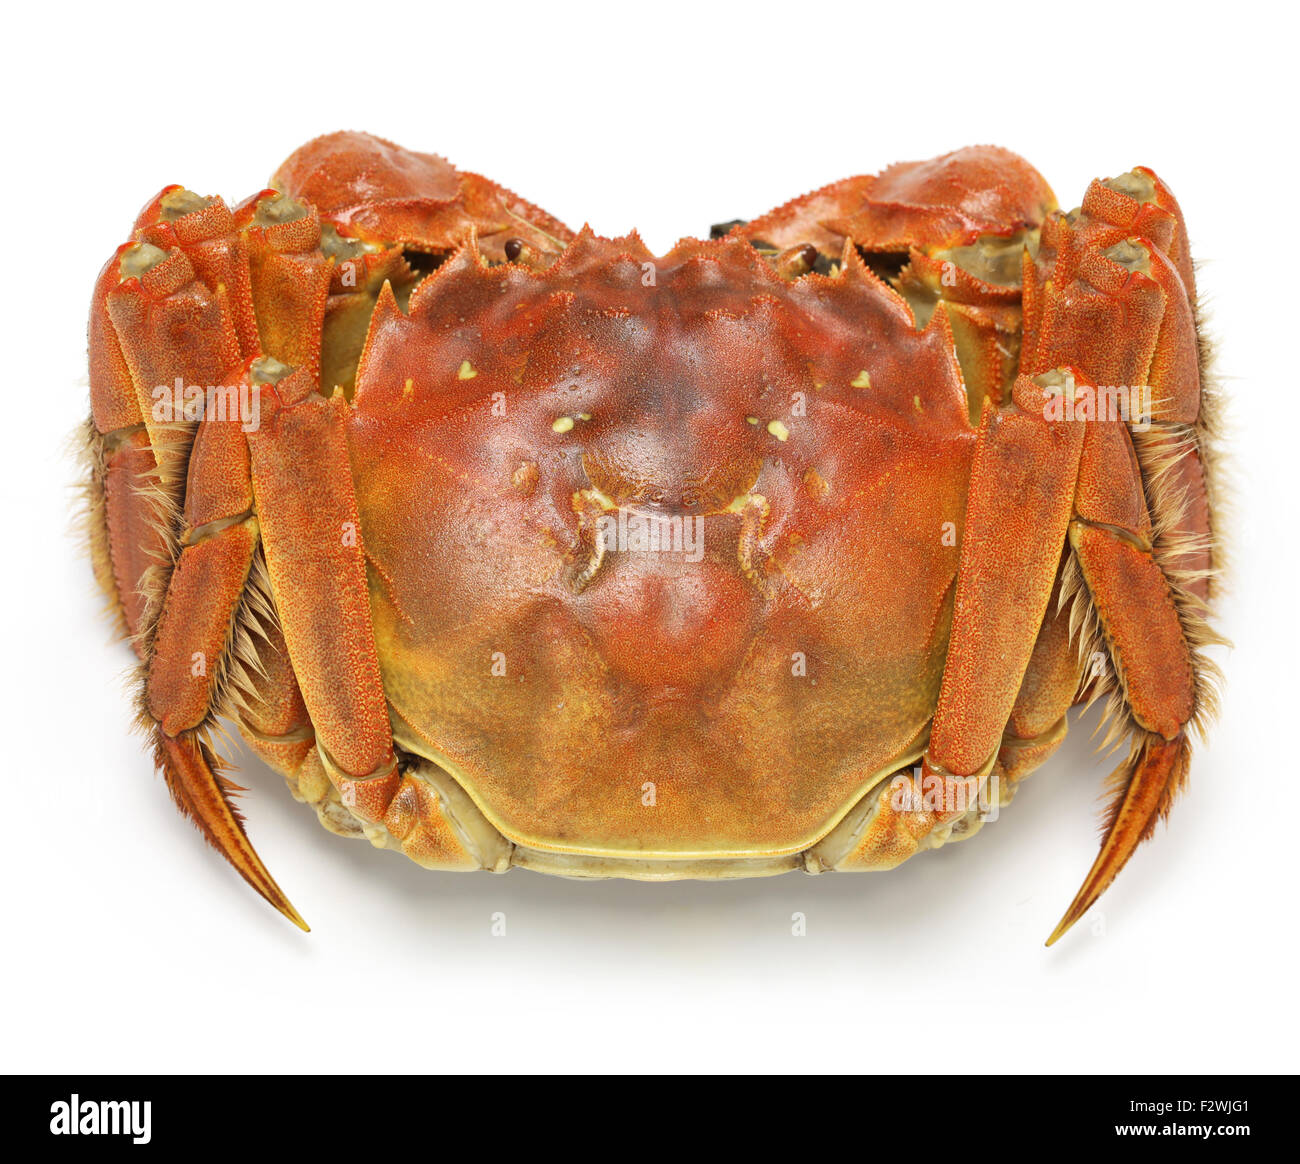 Crabe chinois à la vapeur, le crabe poilu de shanghai isolé sur fond blanc Banque D'Images